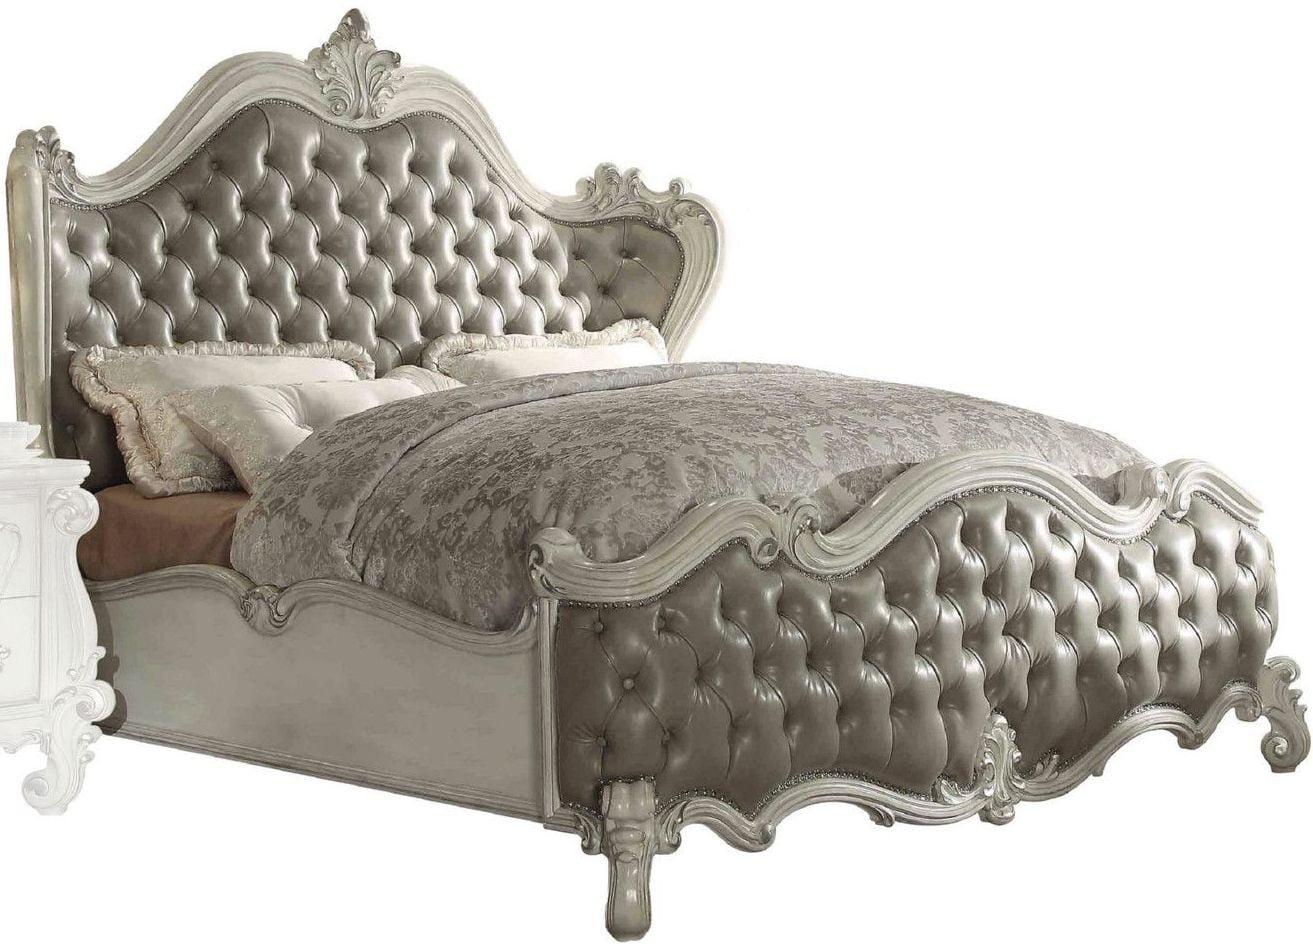 

    
Superstar Upholstered Standard King Bedroom Set 3 Pcs
